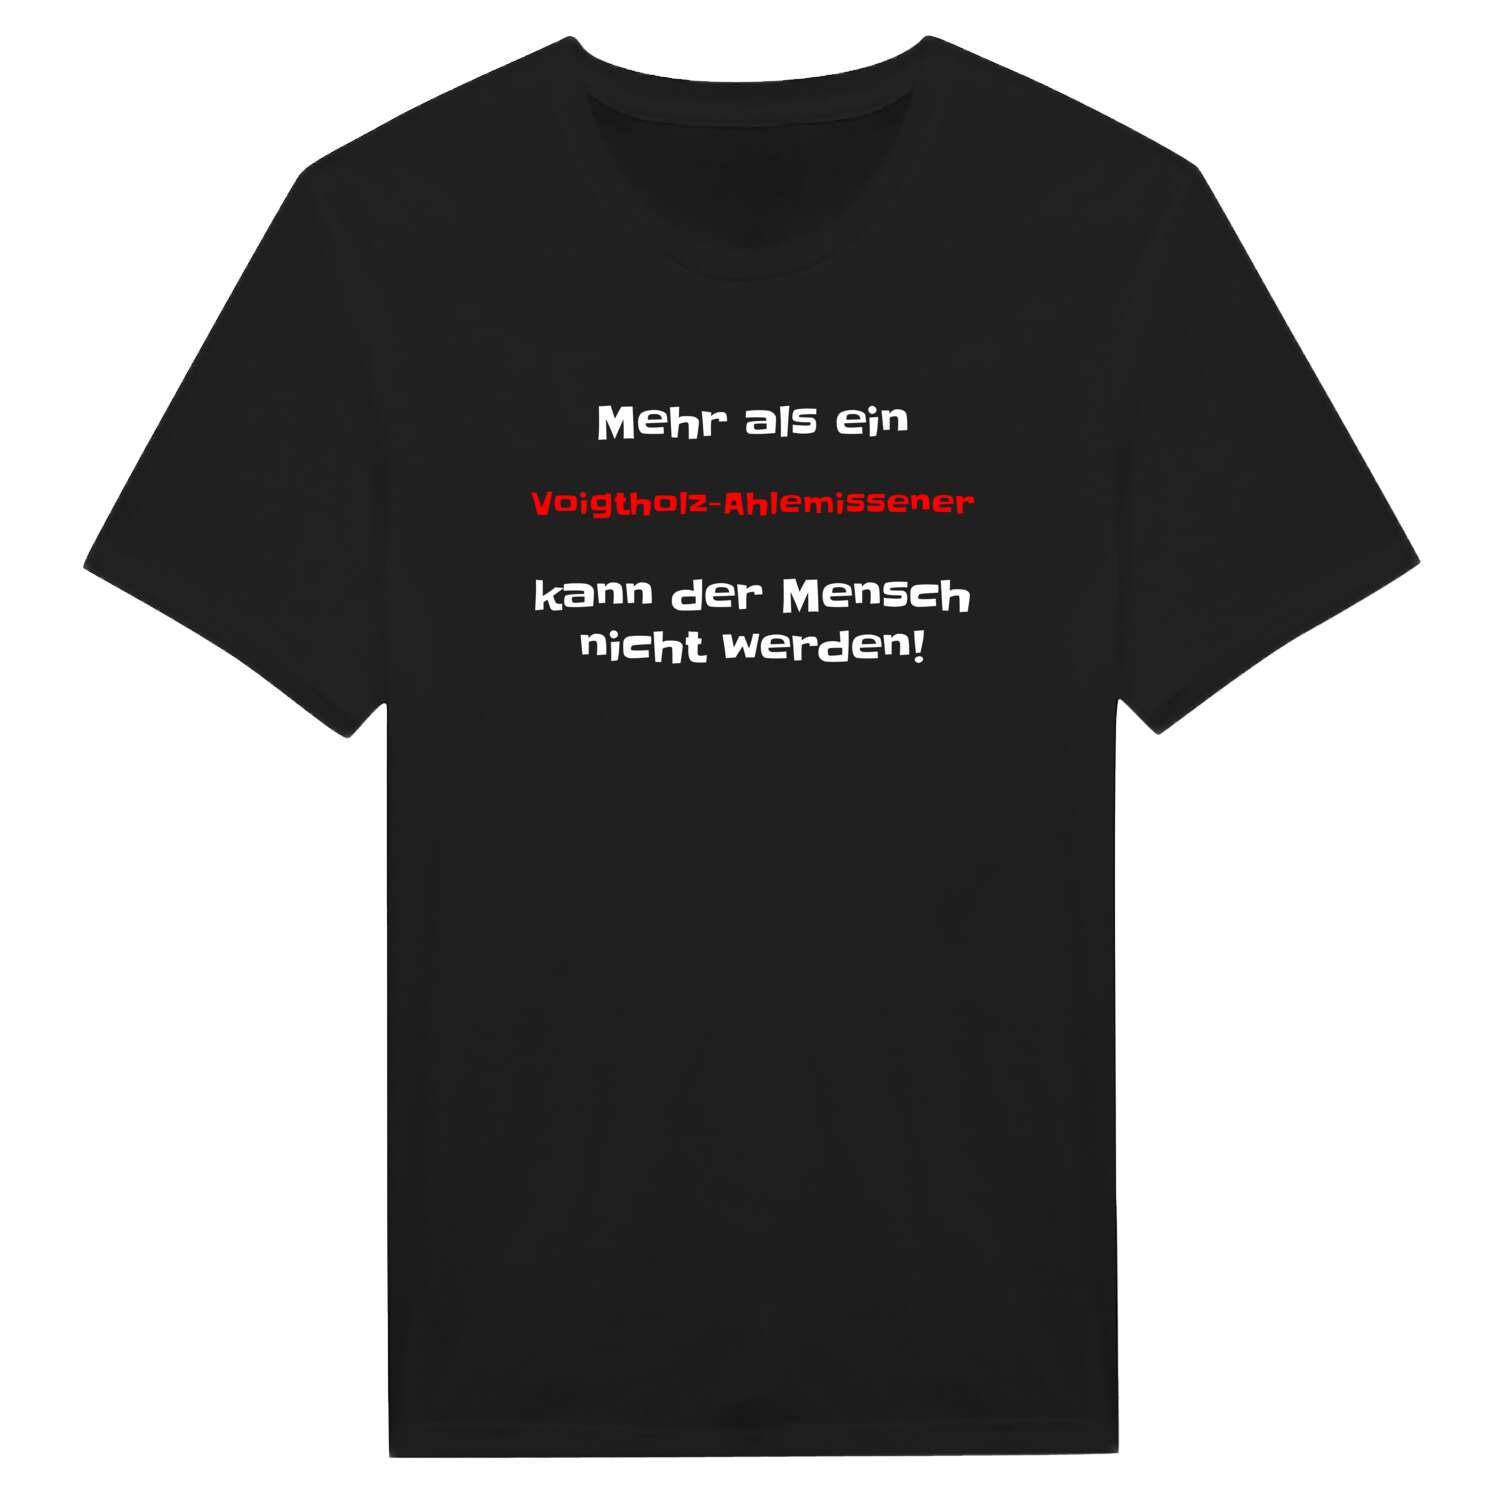 Voigtholz-Ahlemissen T-Shirt »Mehr als ein«